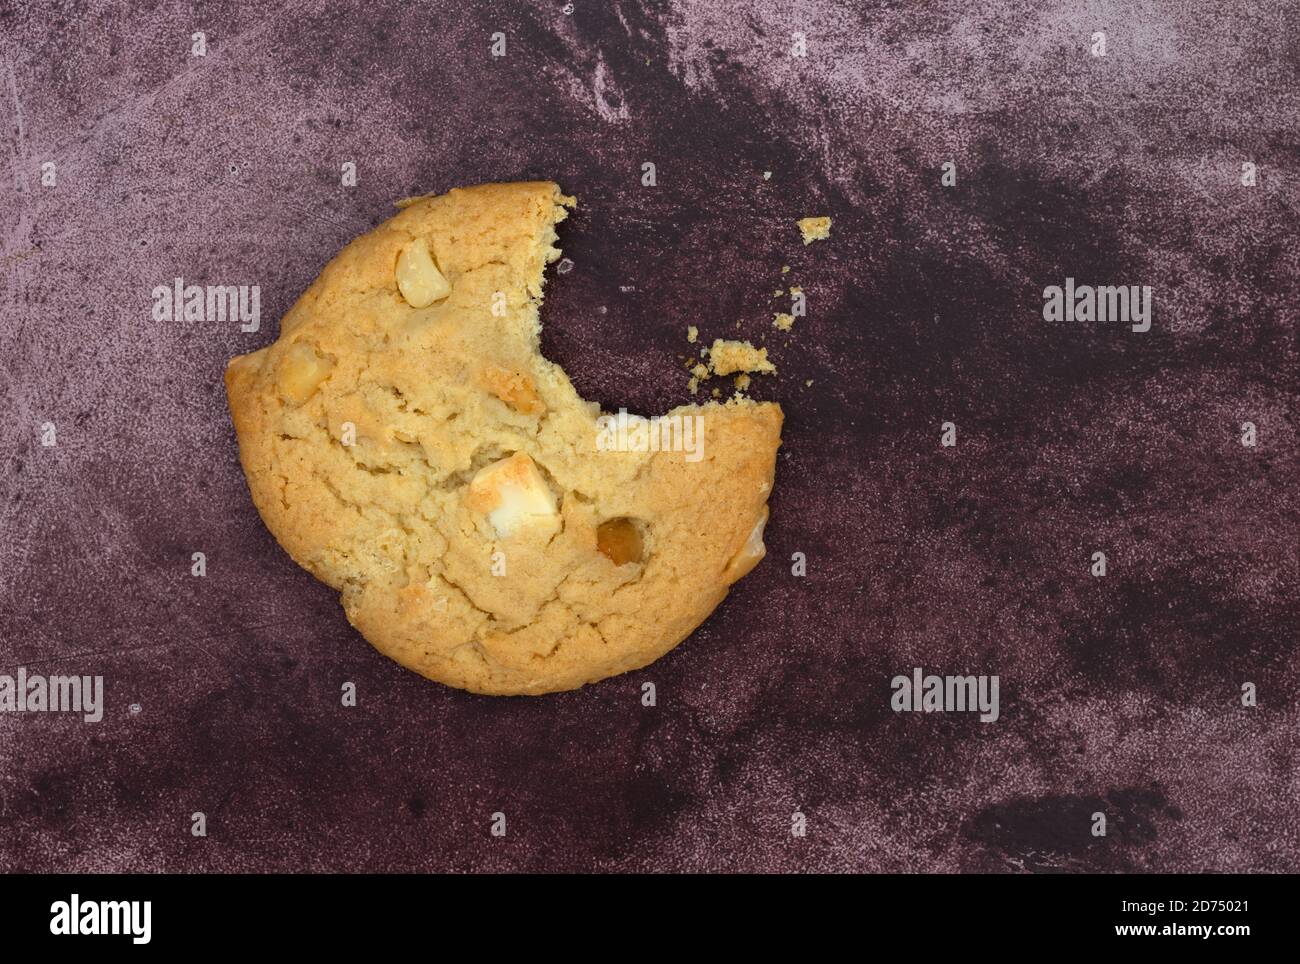 Gourmet Macadamia Nuss und weiße Schokolade Cookie fehlt ein Biss mit Krümel auf einem kastanienbraunen Hintergrund. Stockfoto